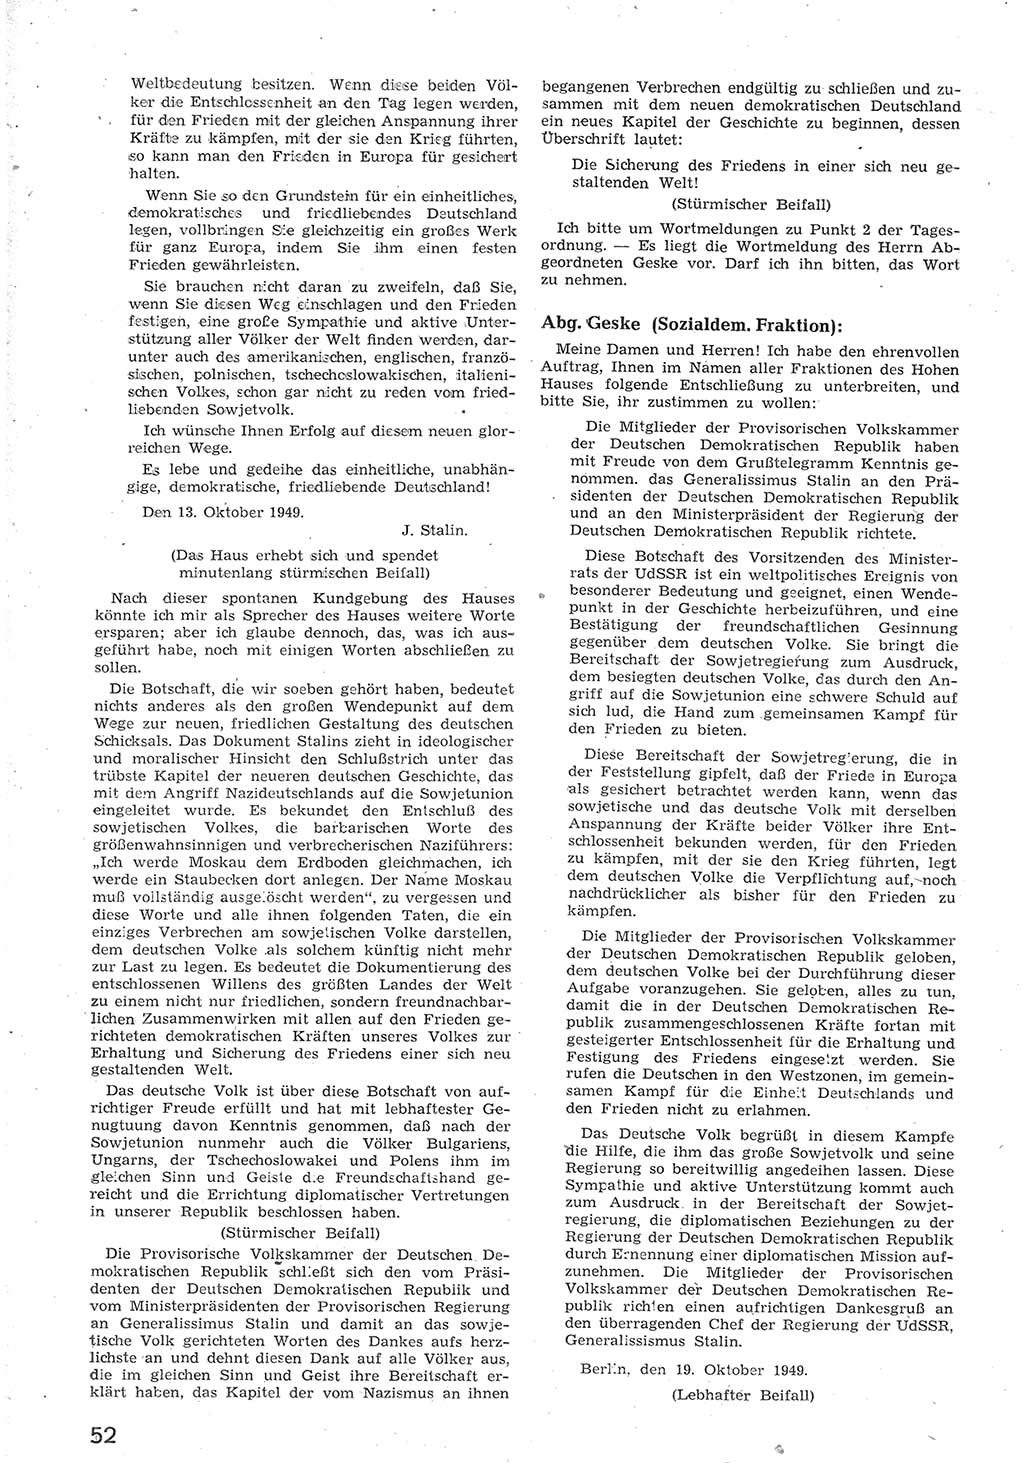 Provisorische Volkskammer (VK) der Deutschen Demokratischen Republik (DDR) 1949-1950, Dokument 64 (Prov. VK DDR 1949-1950, Dok. 64)